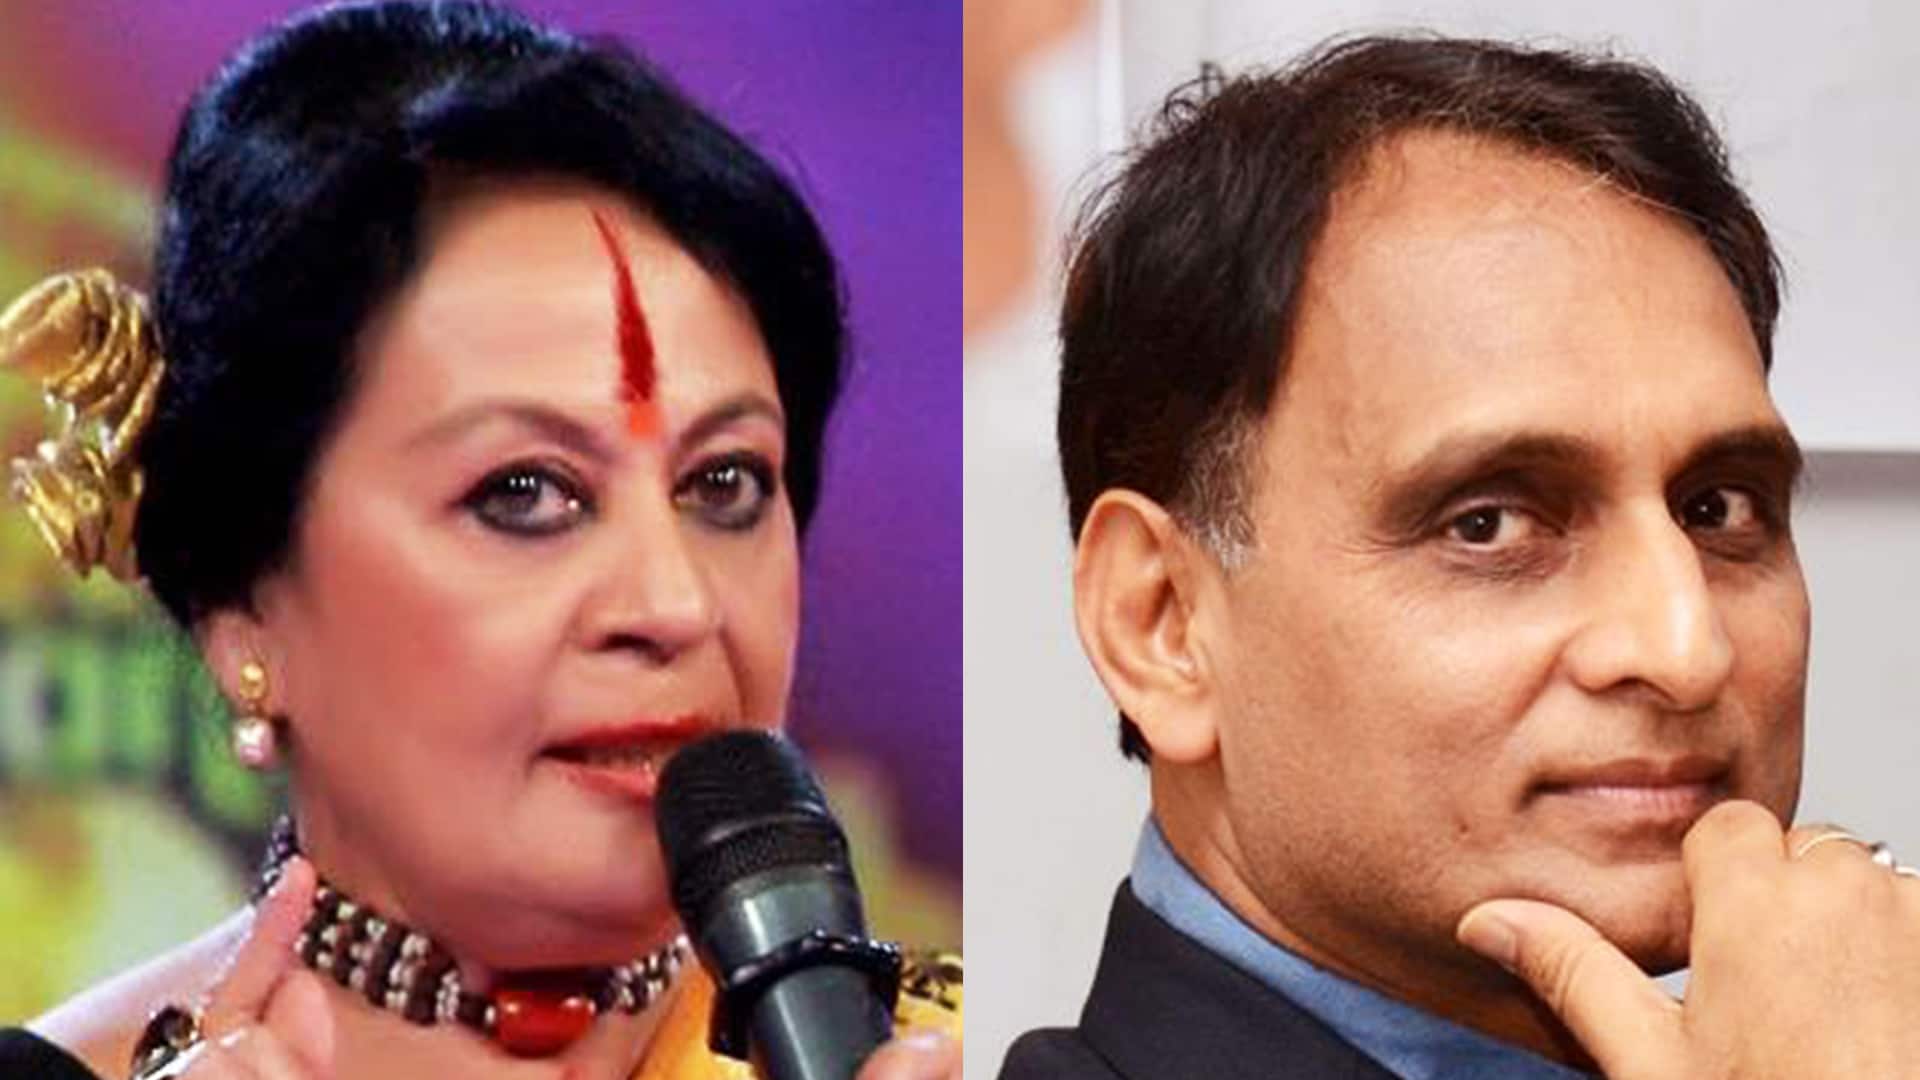 Sonal Mansingh, Rakesh Sinha among four nominated to Rajya Sabha